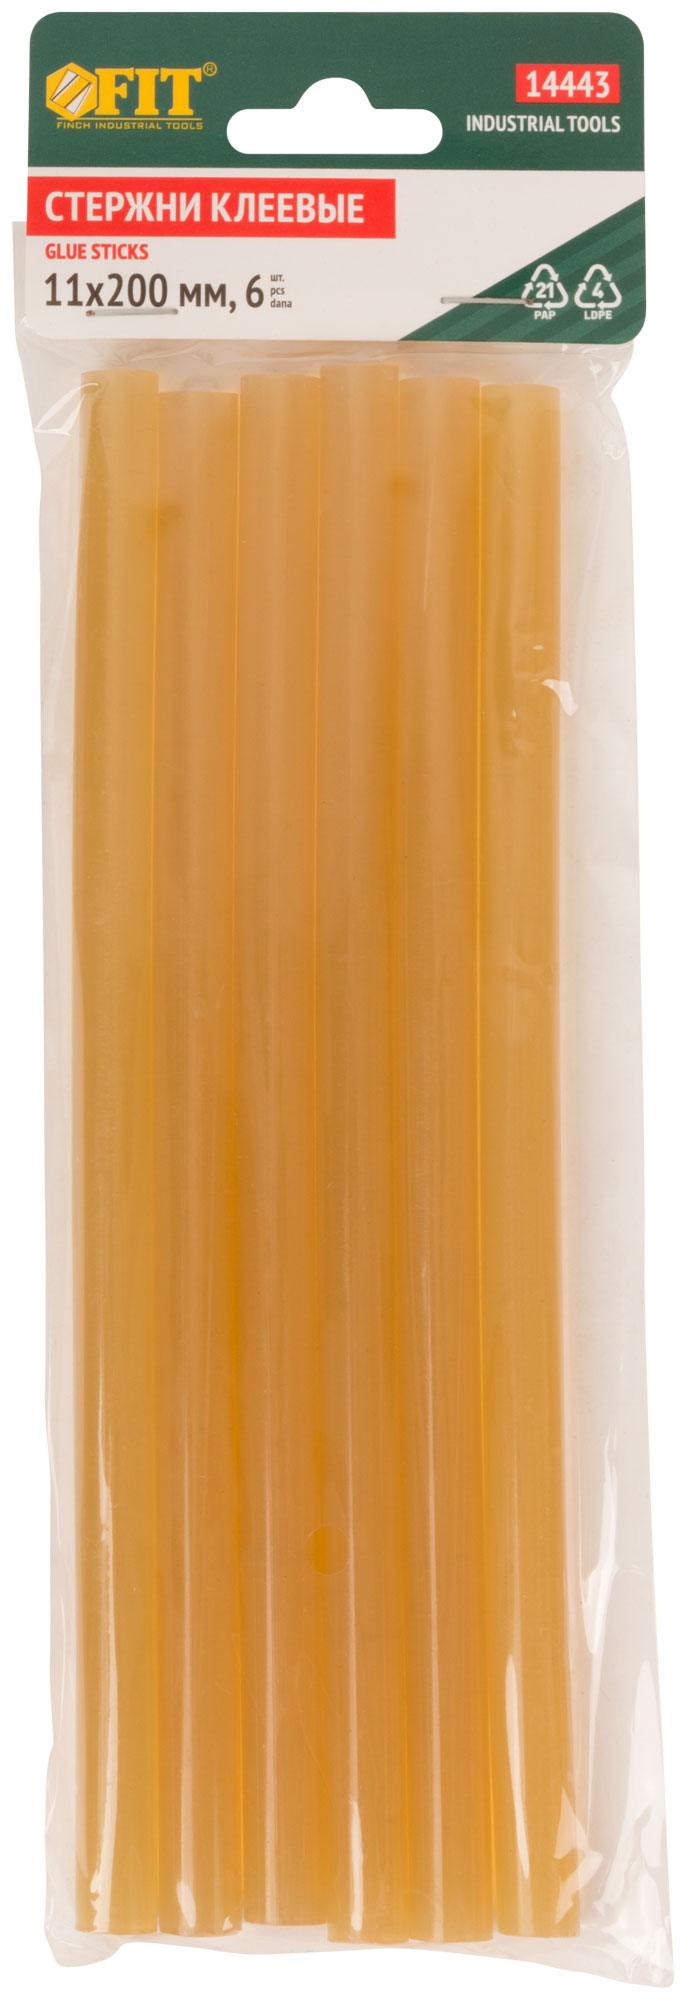 Стержни клеевые желтые д.11 мм х 200 мм, 6 шт.